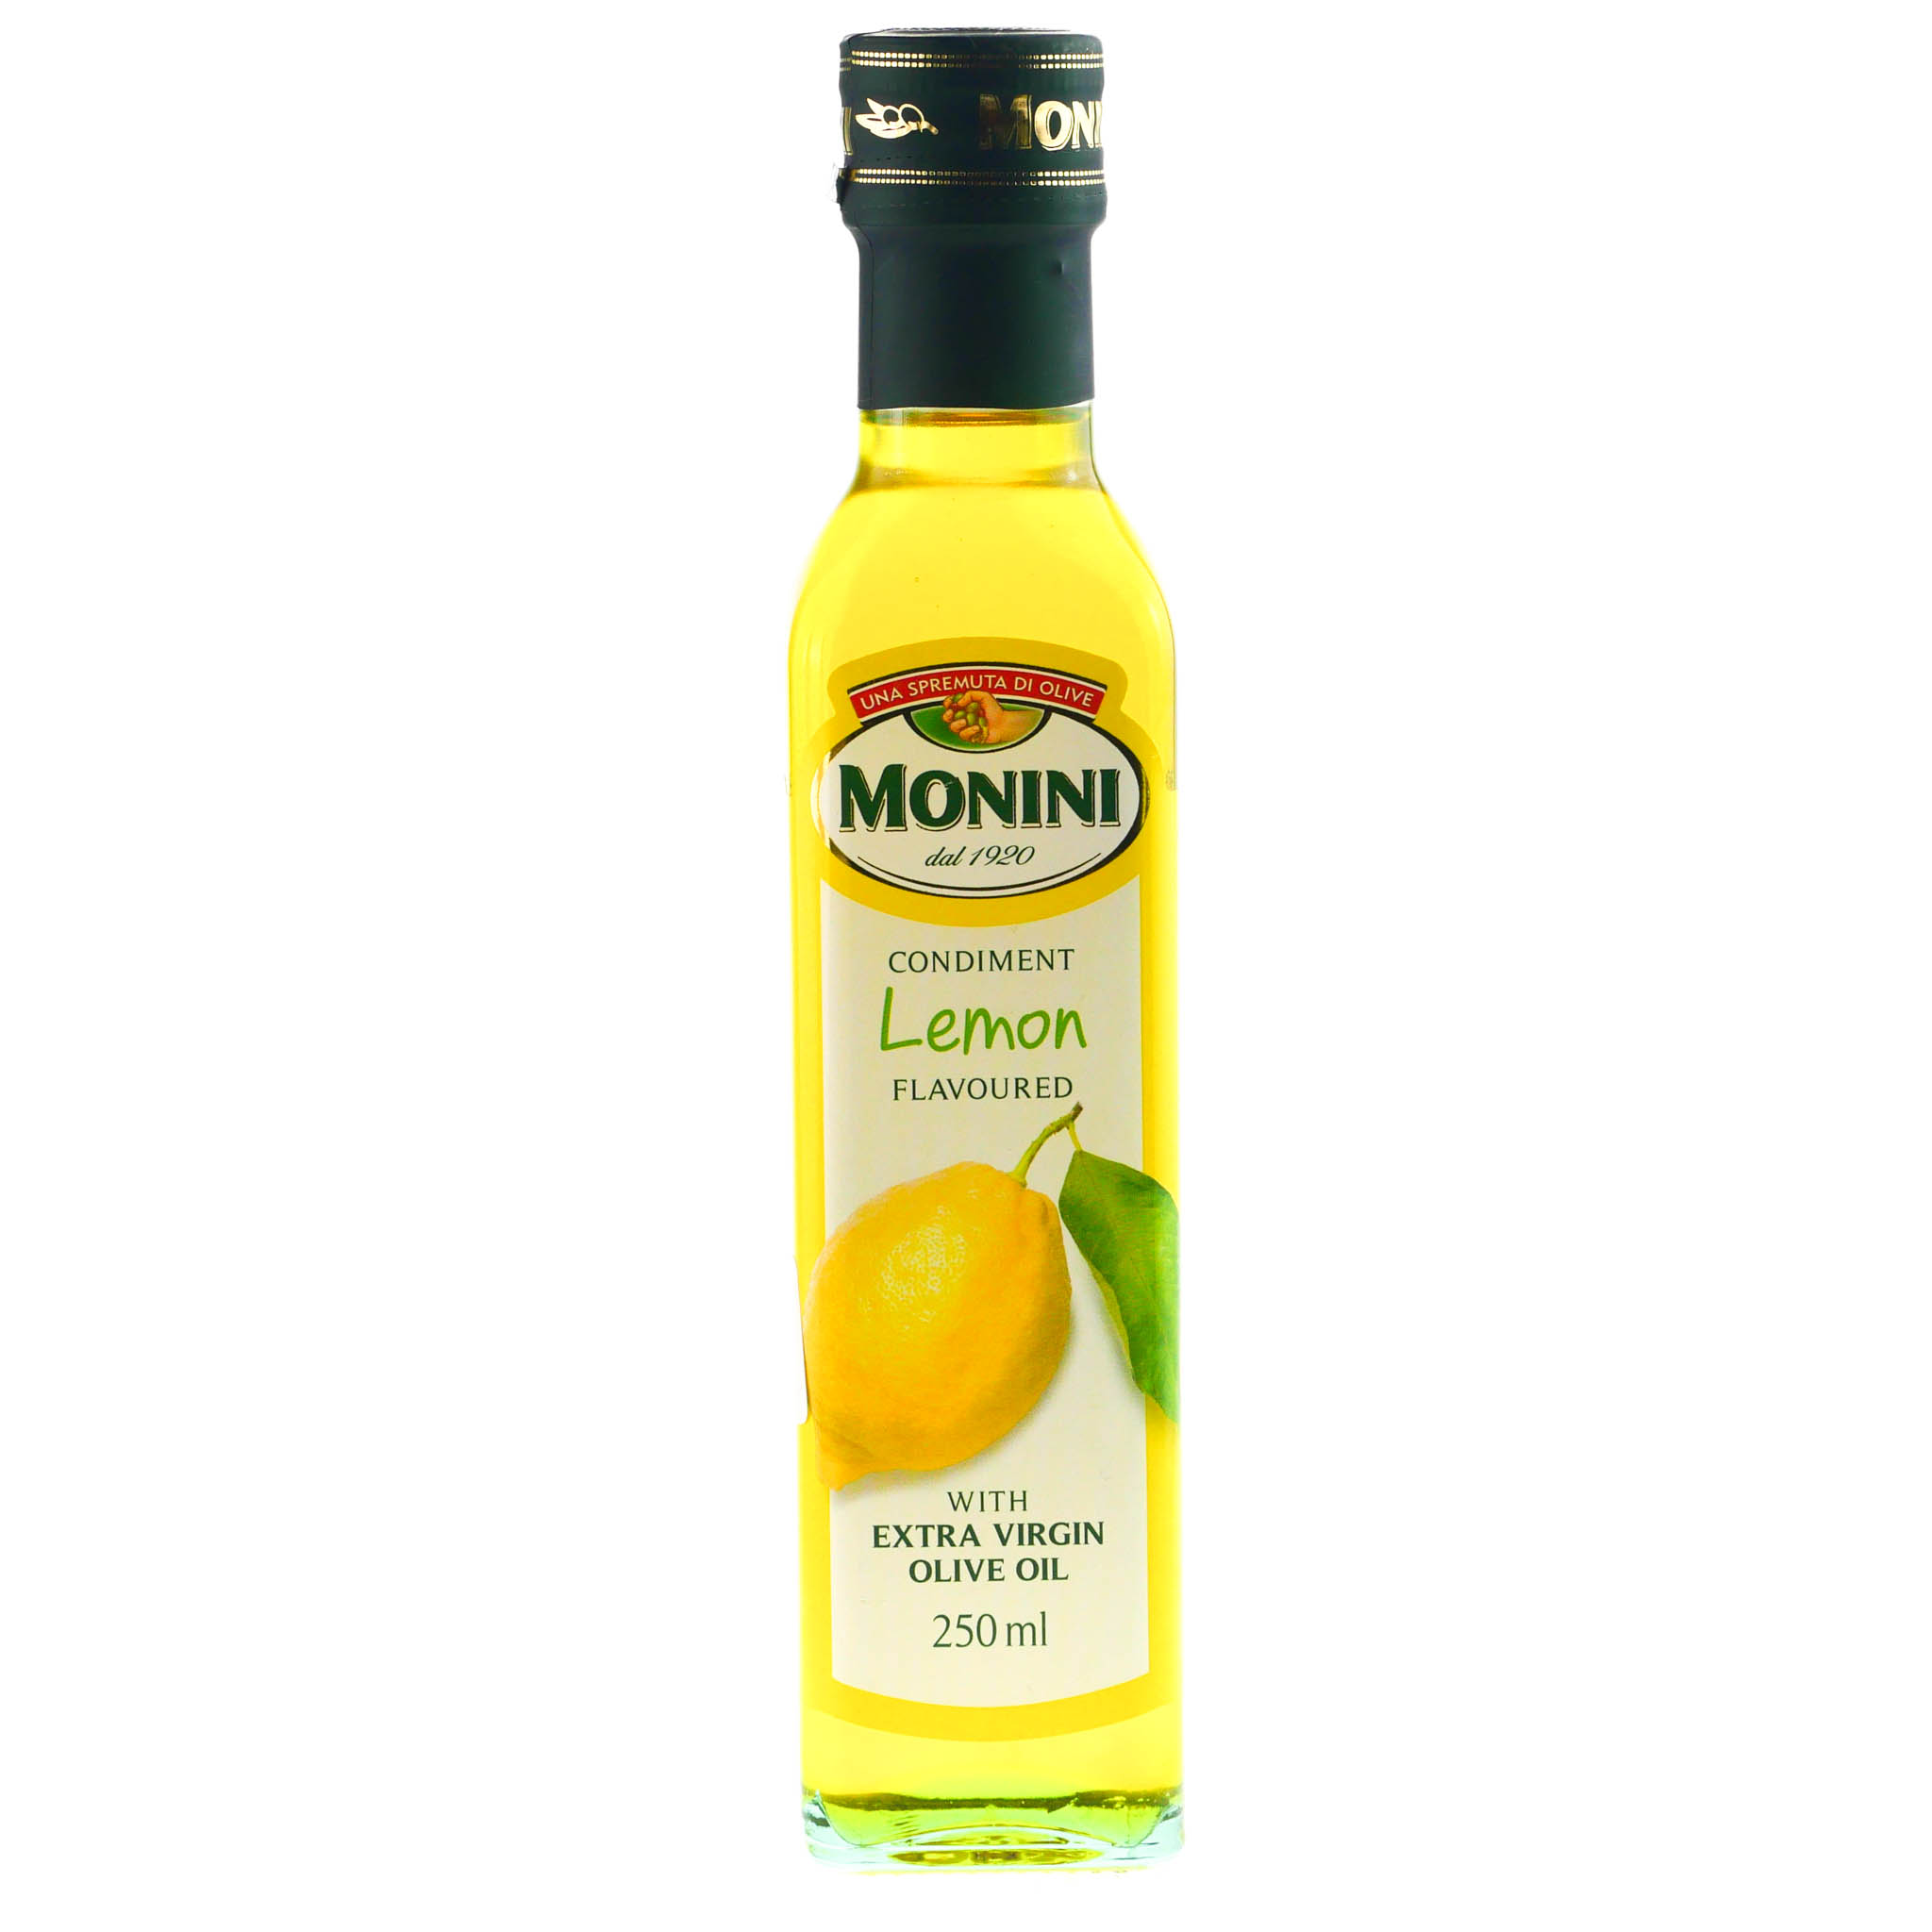 Оливковое масло для детей. Monini масло оливковое Extra Virgin. Масло Monini оливковое 250 мл. Масло из виноградной косточки Monini, 500мл. Масло оливковое с базиликом Extra Virgin, 250мл.